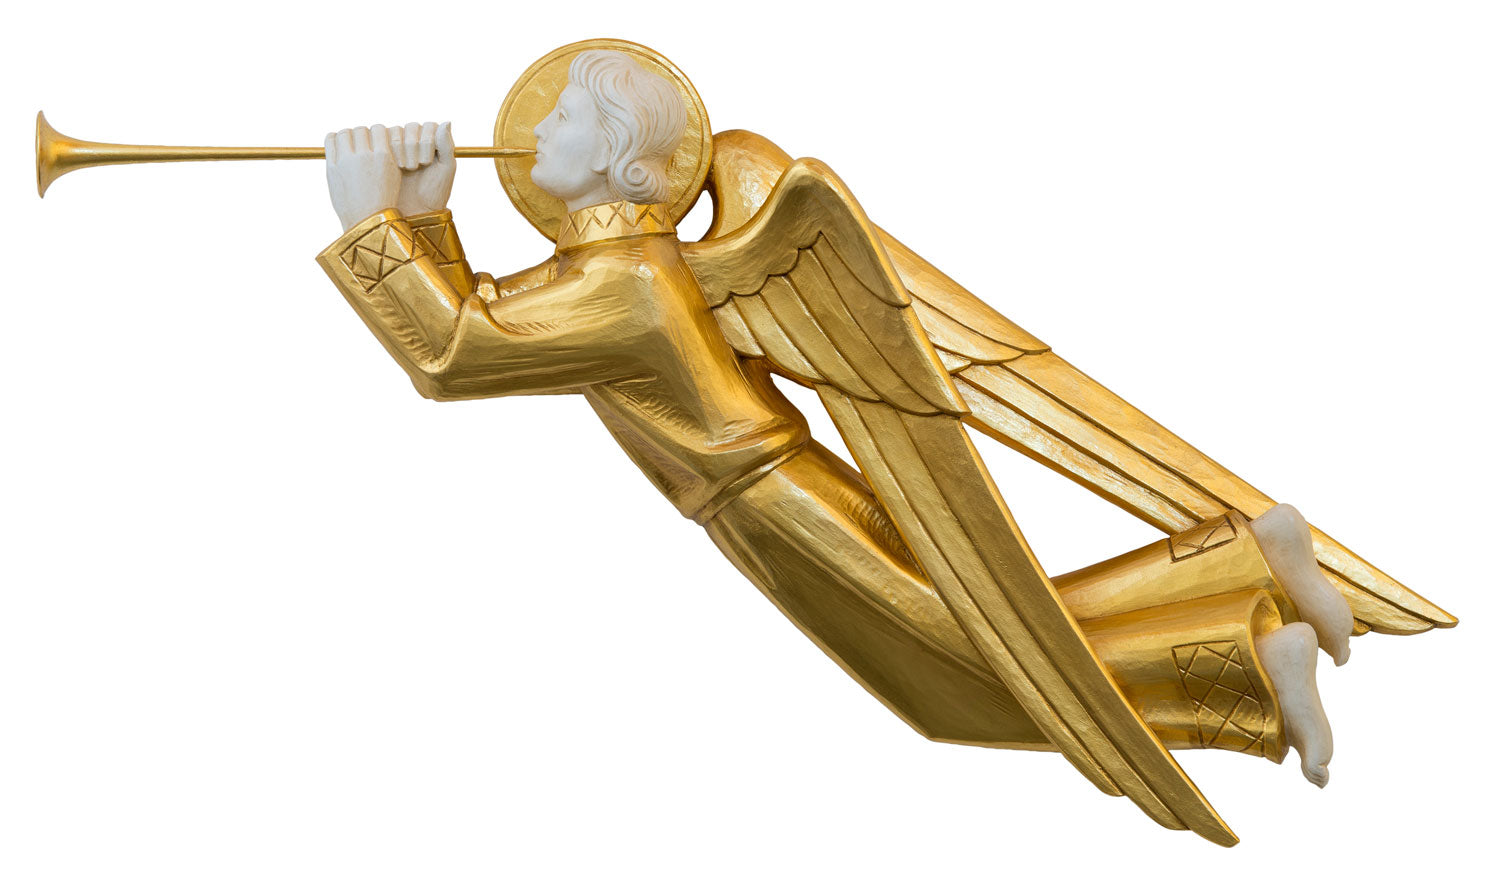 trumpeting-angels-statue-1250-2.jpg